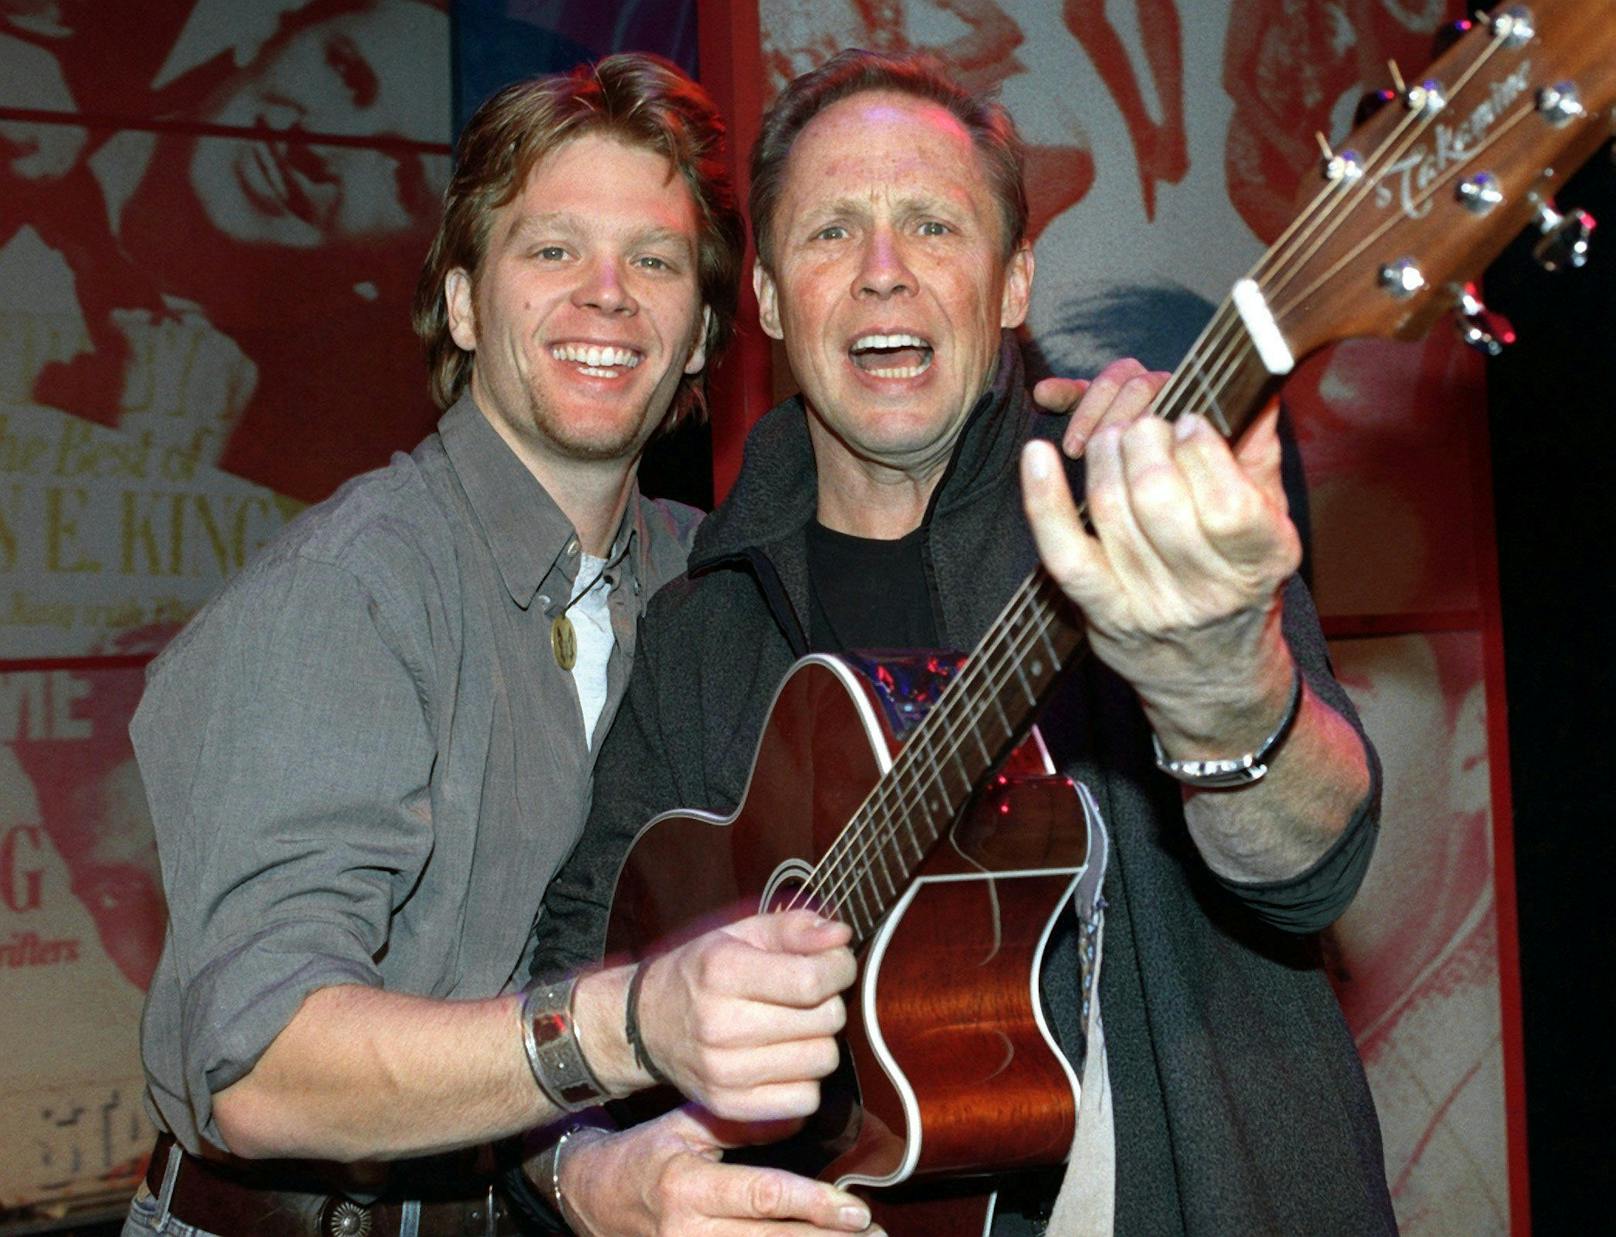 Mit Sohn Mike am 22.11.1999 im Düsseldorfer Capitol-Theater auf einer Gitarre. Die deutsche Rock'n'Roll-Legende tourte durch Deutschland - Filius Mike war mit von der Partie.